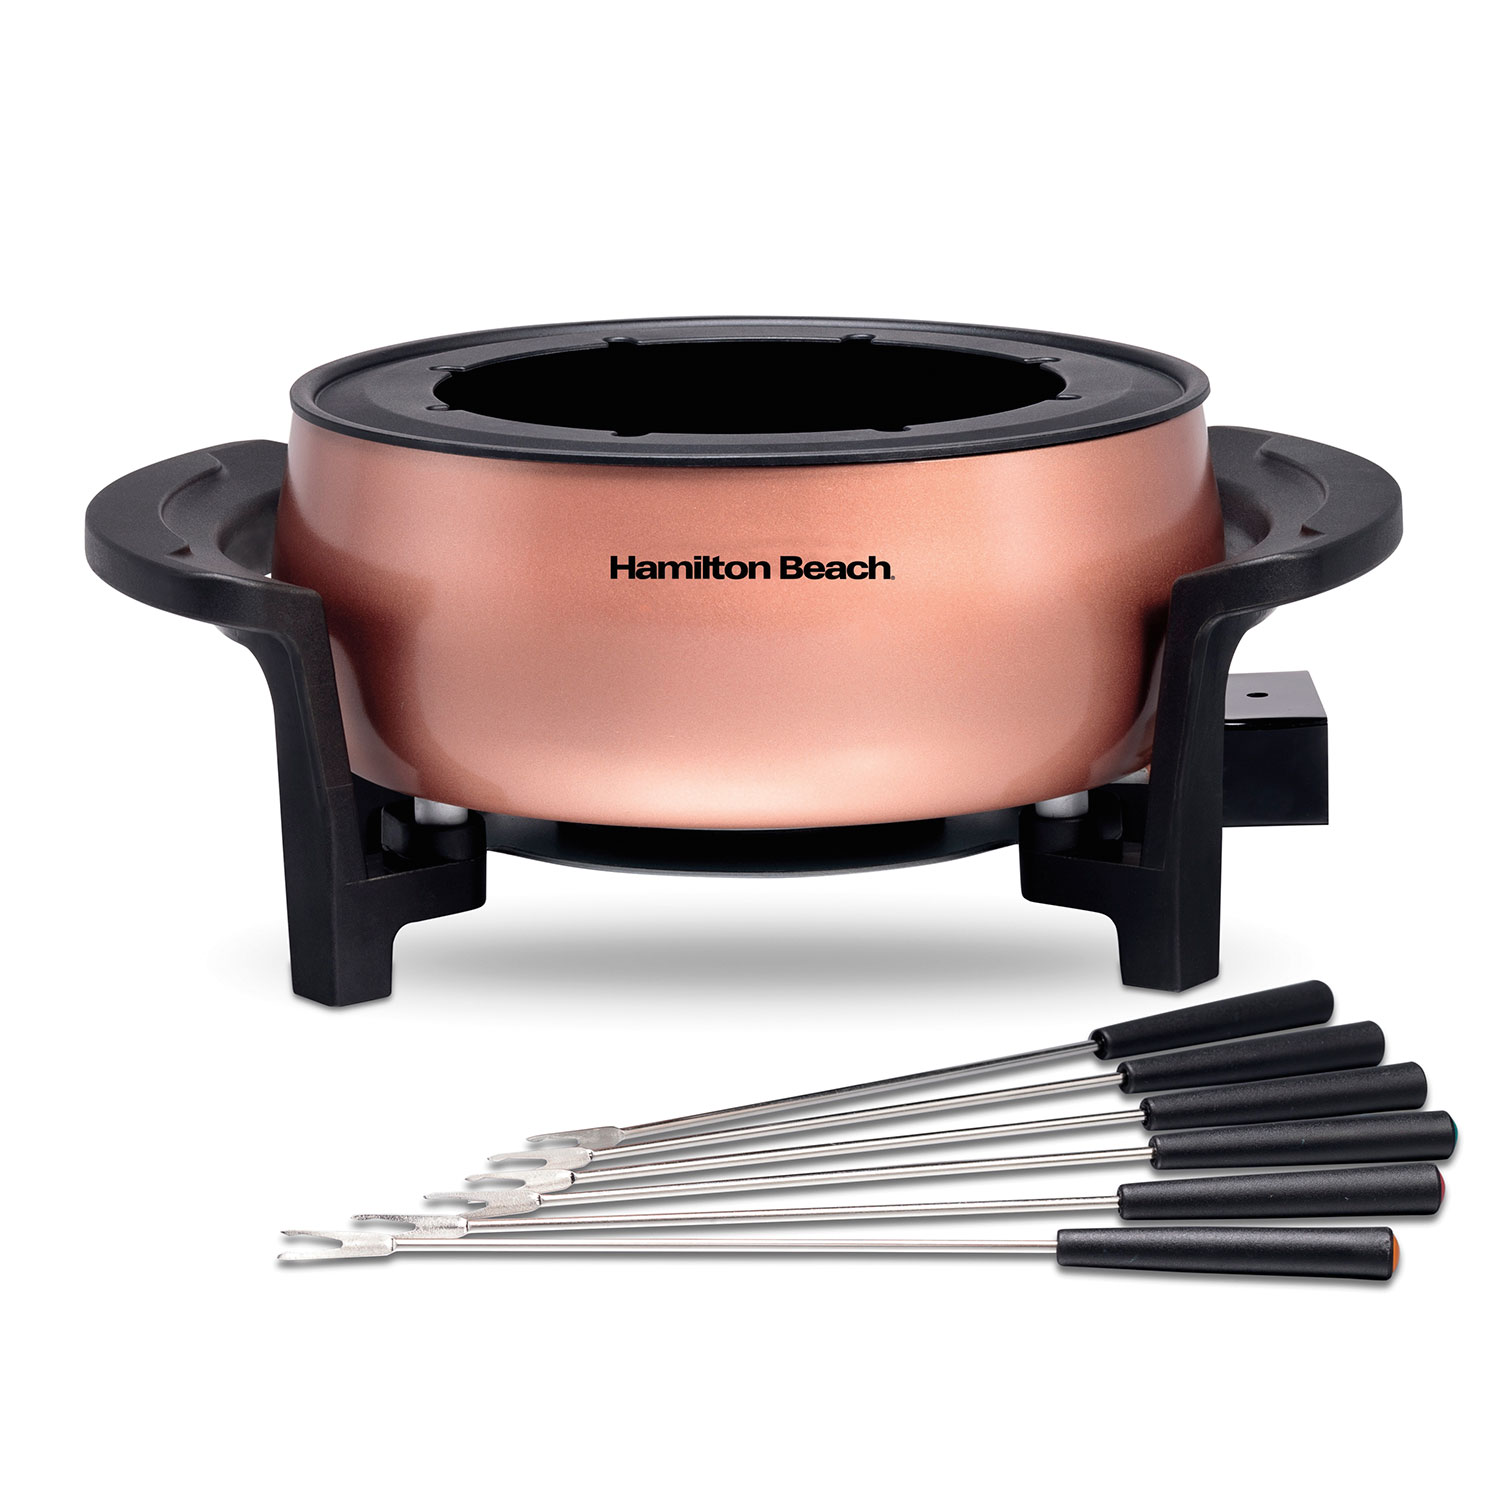 Fondue Pot 3 Quart / 2.8 Liter Capacity, Copper (86201G)